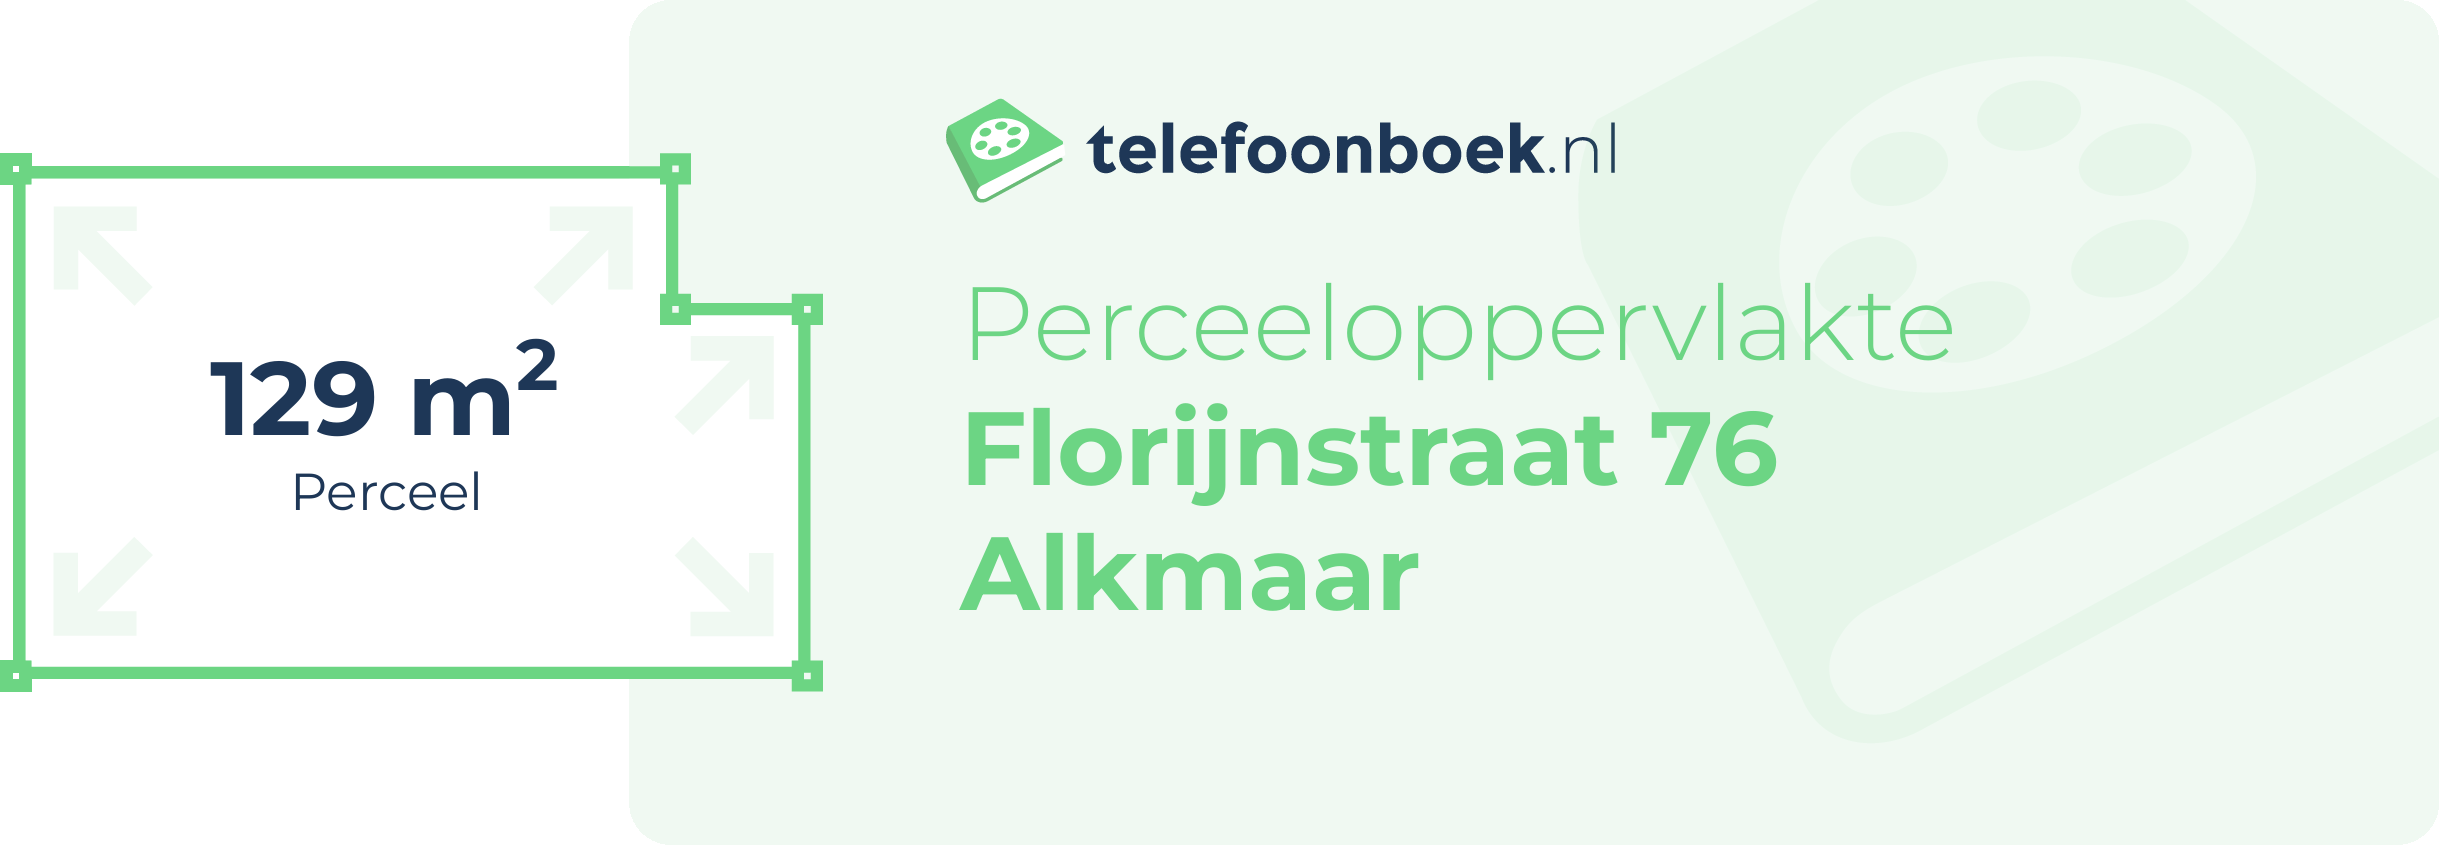 Perceeloppervlakte Florijnstraat 76 Alkmaar